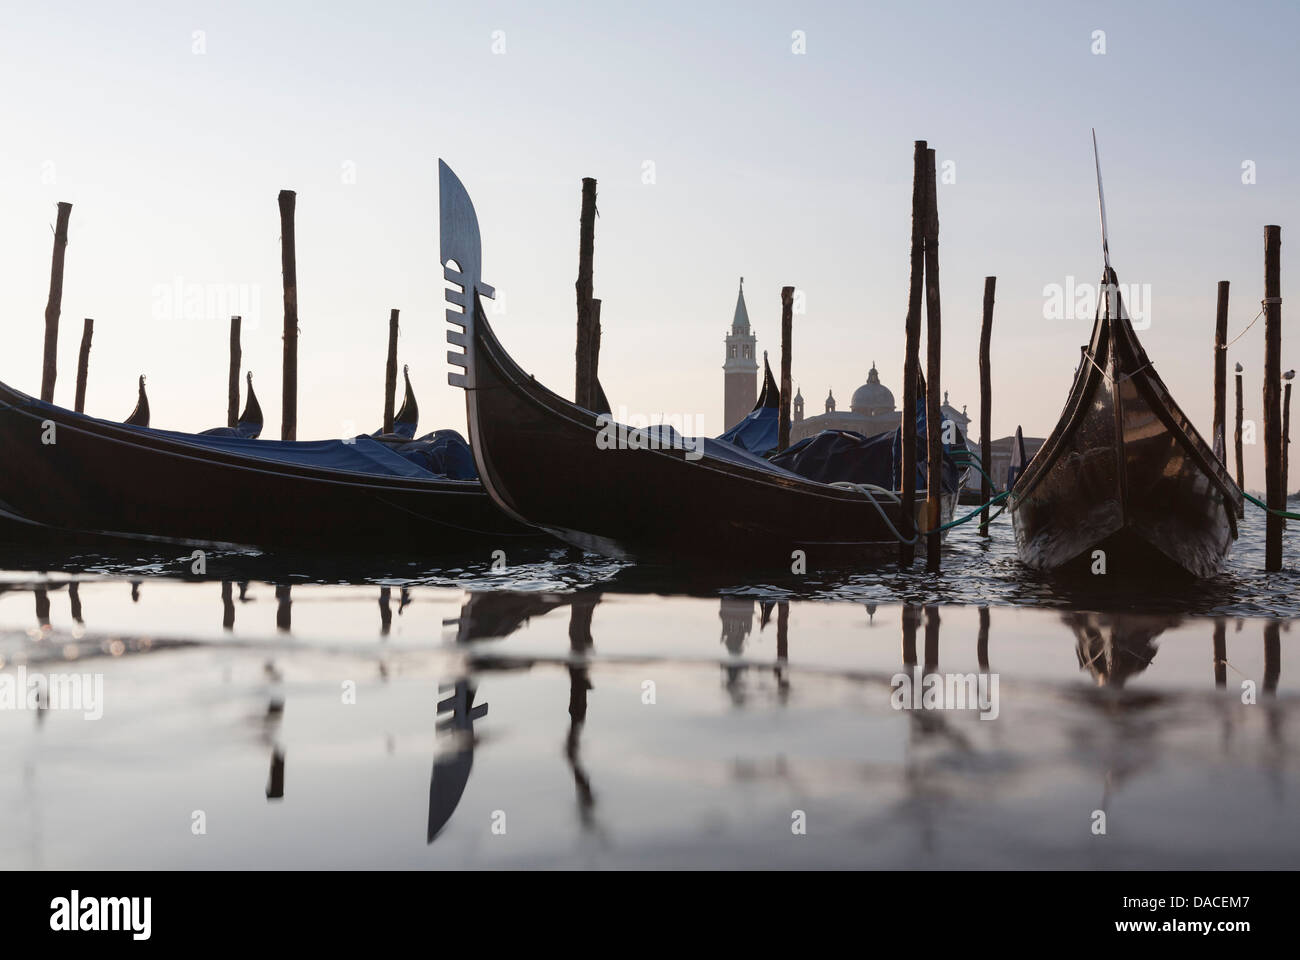 Gondole con la riflessione e l'acqua splash, Venezia, Italia Foto Stock